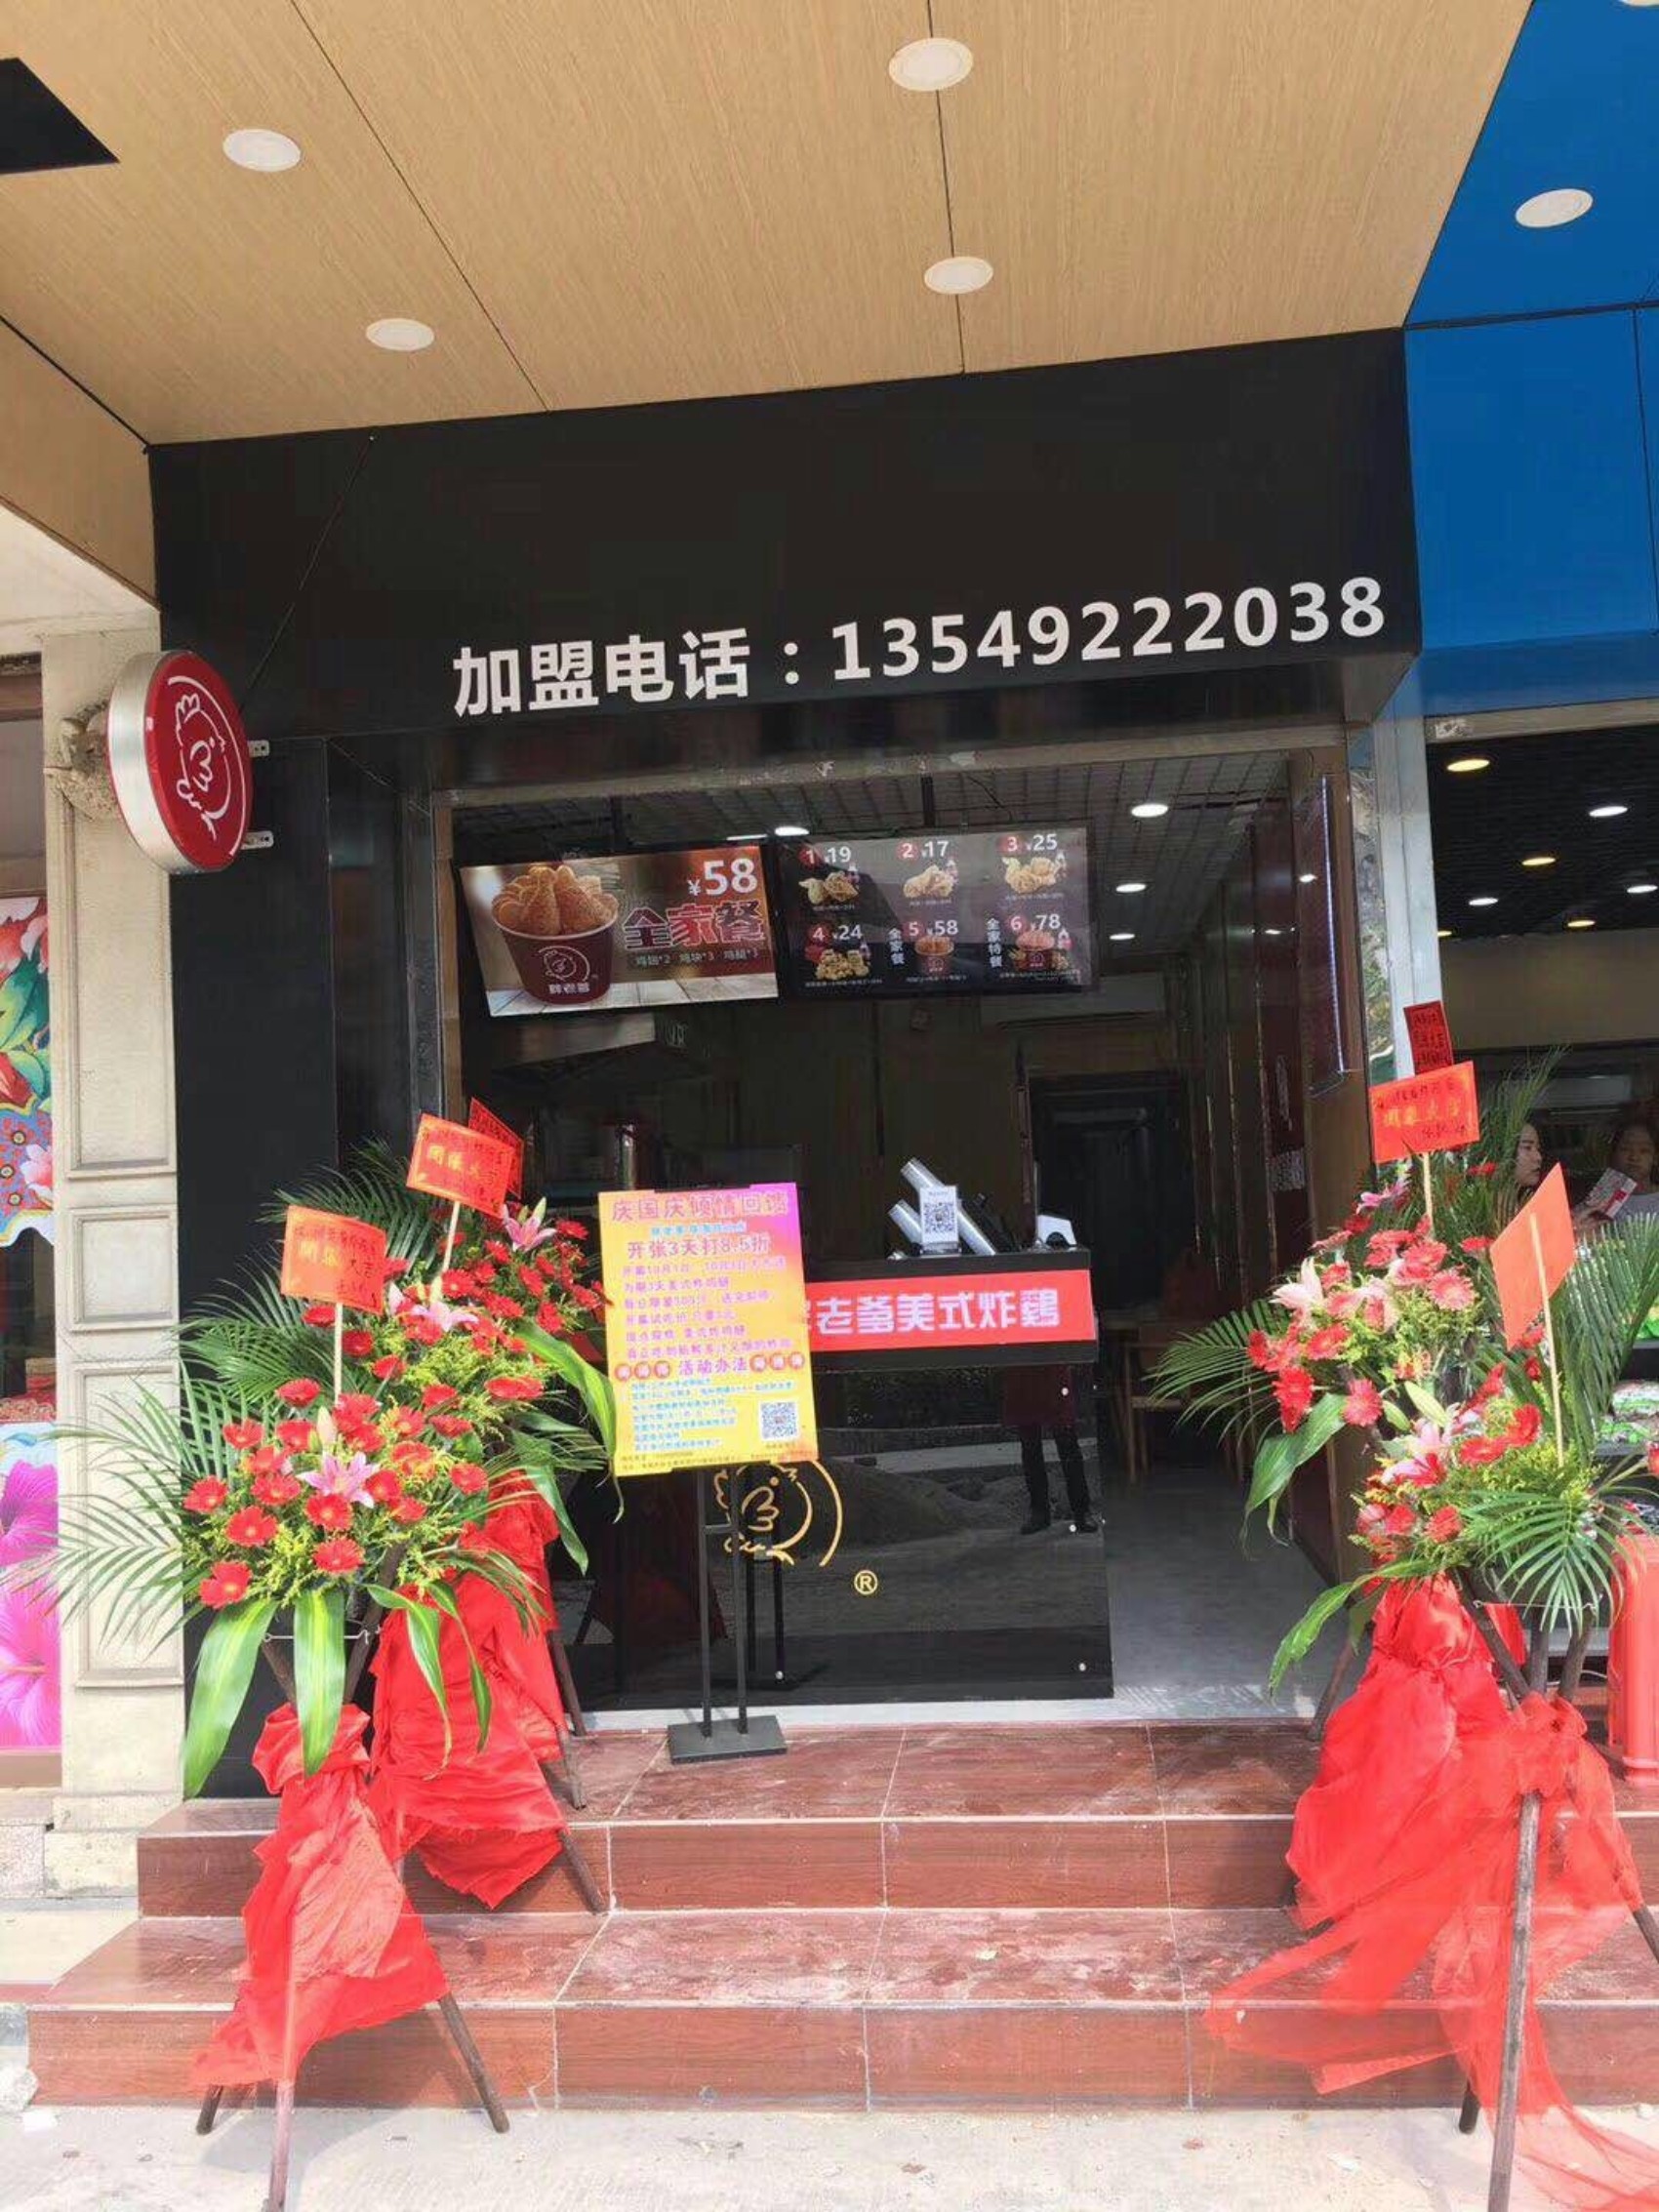 台湾胖老爹美式炸鸡店==珠海店开业了!